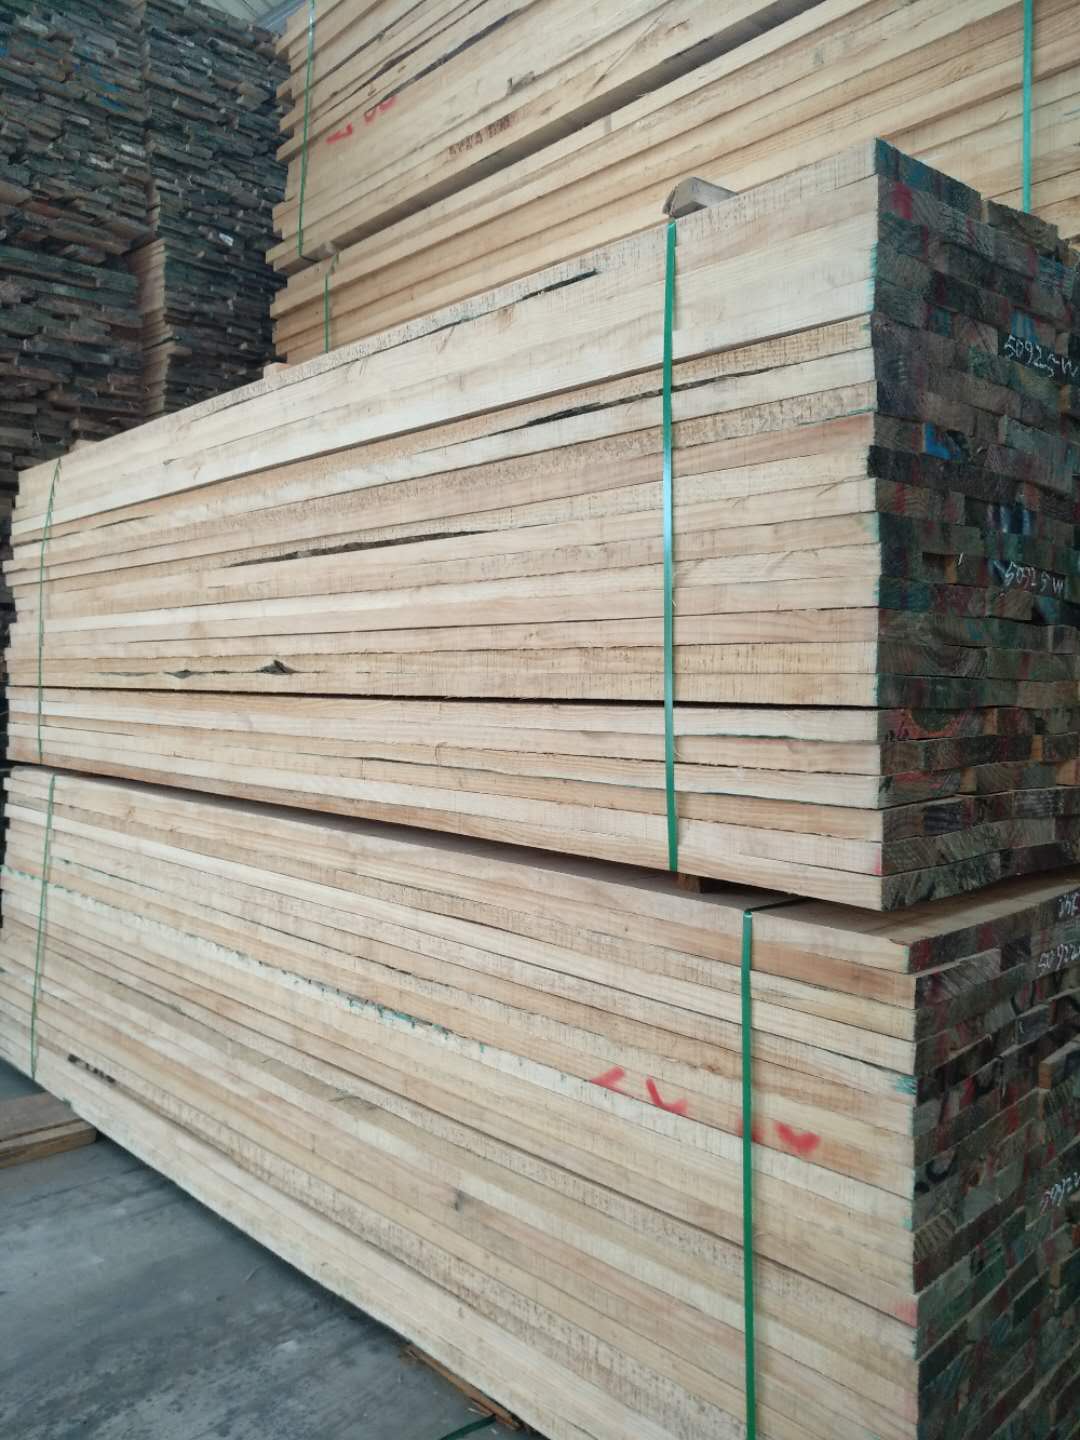 供应新西兰辐射松木板材 供应新西兰松木板 直销新西兰松木板 有节家具材 50厚4米无节松木板